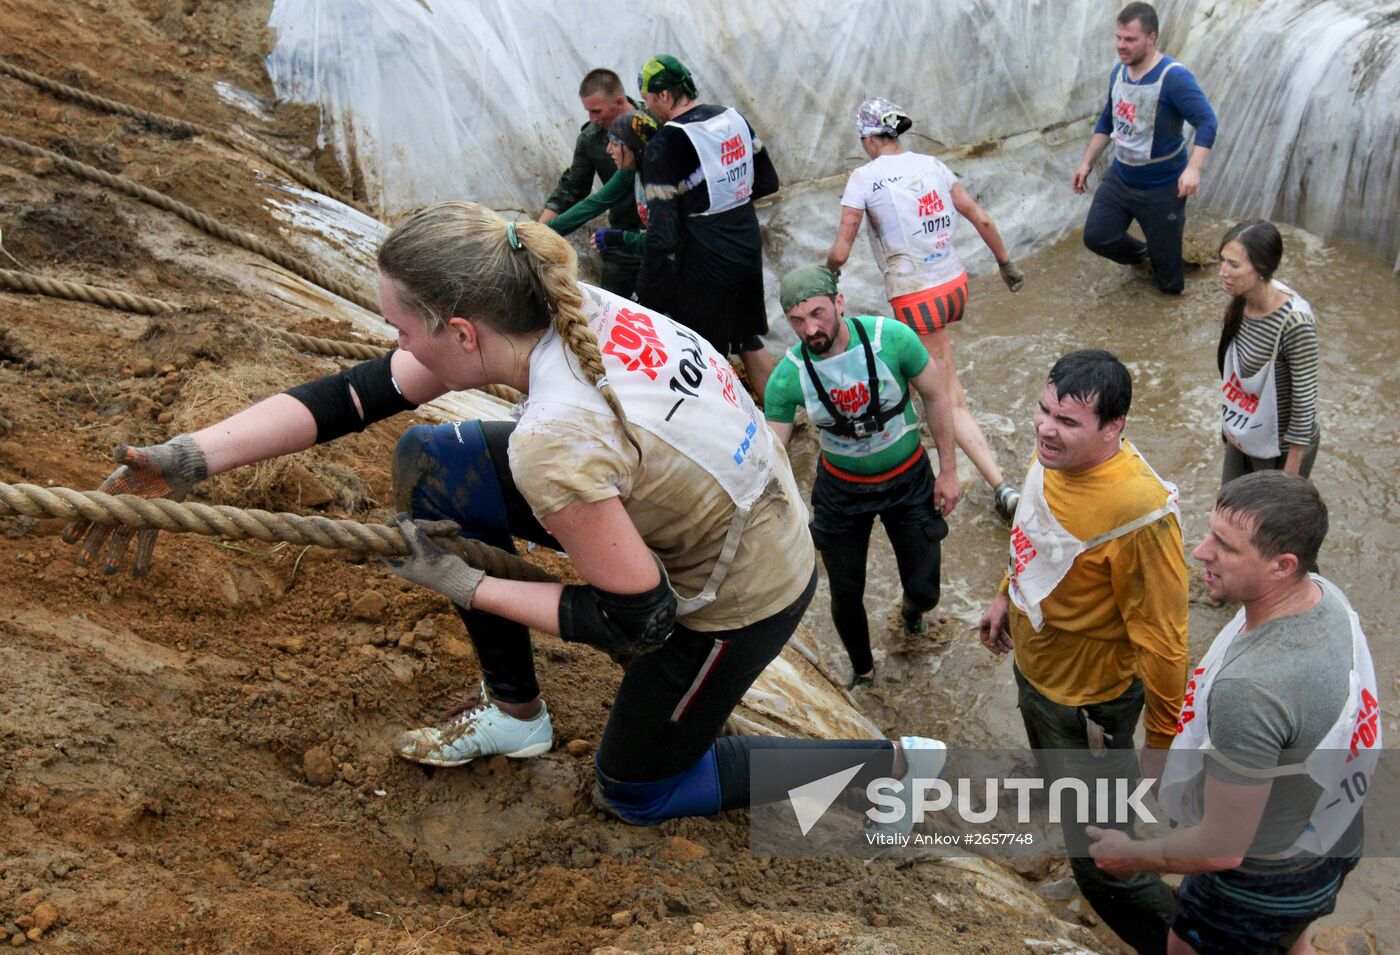 Heroes' Race in Vladivostok